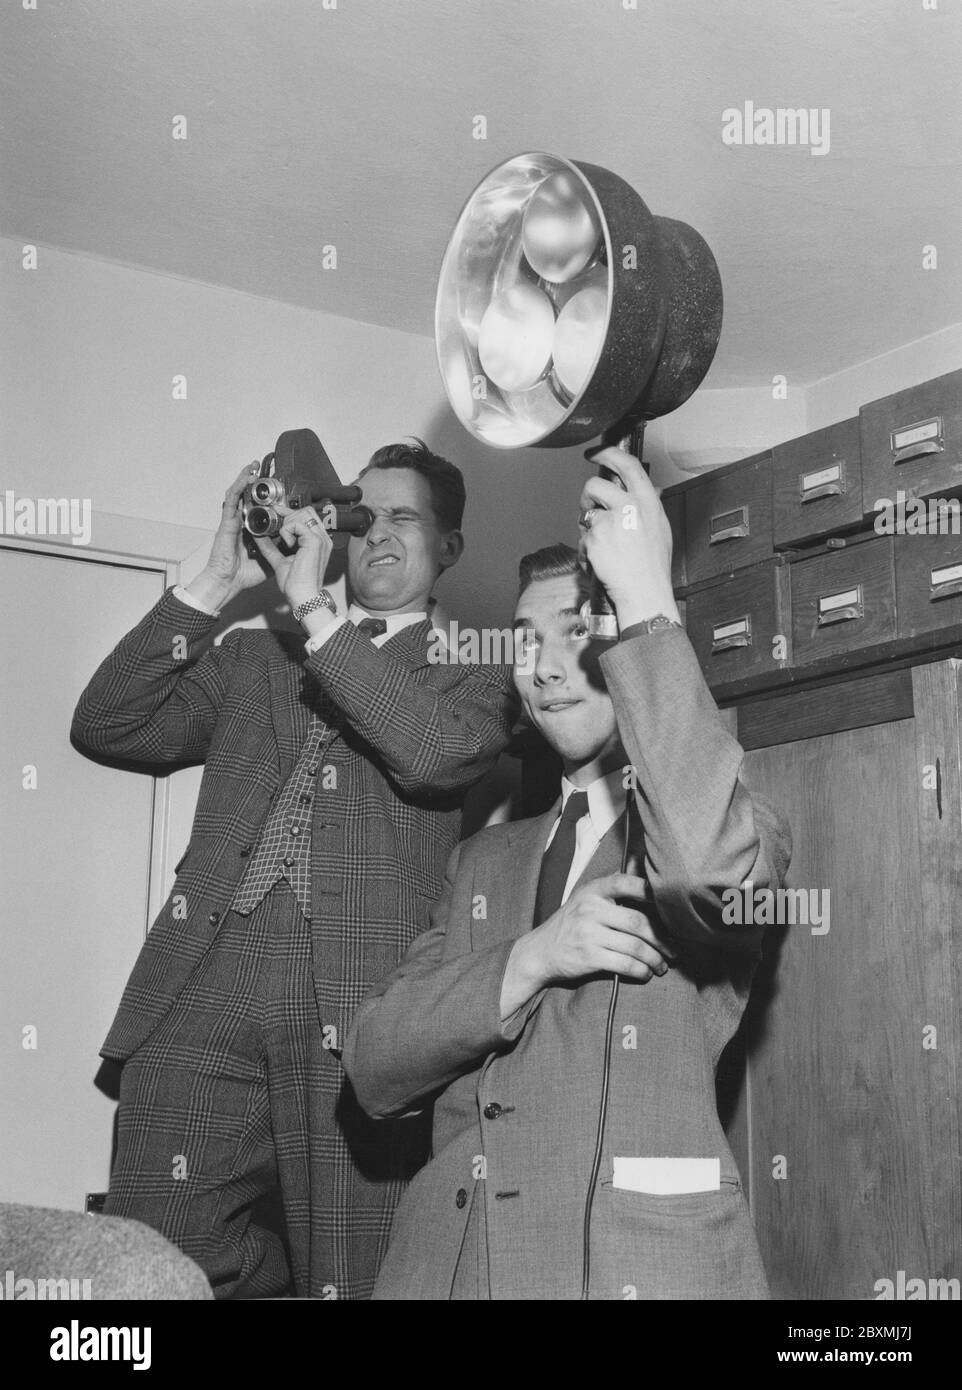 Dreharbeiten in den 1950er Jahren. Ein Mann filmt mit einer kleinen 8-mm-Filmkamera, während sein Freund Lampen hält, um das gefilmte Motiv zu beleuchten. Die Kamera produzierte einen analogen Film, der von einem Projektor auf einer weißen Leinwand angesehen wurde. Schweden 1958 Stockfoto